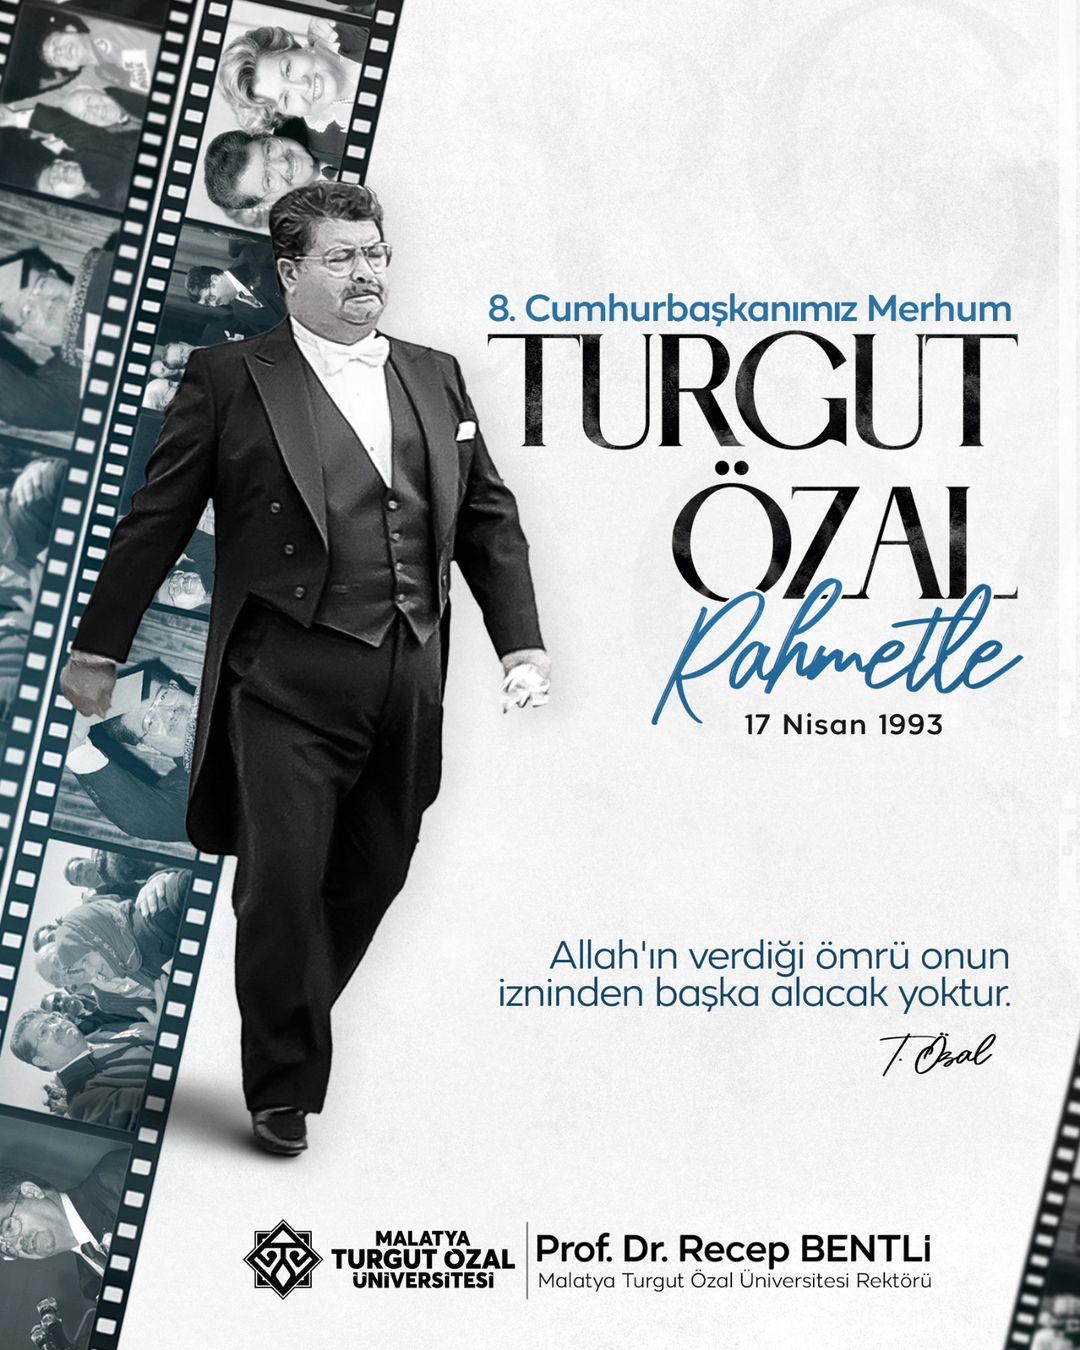 Türkiye'nin 8. Cumhurbaşkanı Turgut Özal'ın vefatının 31. yılı anılıyor